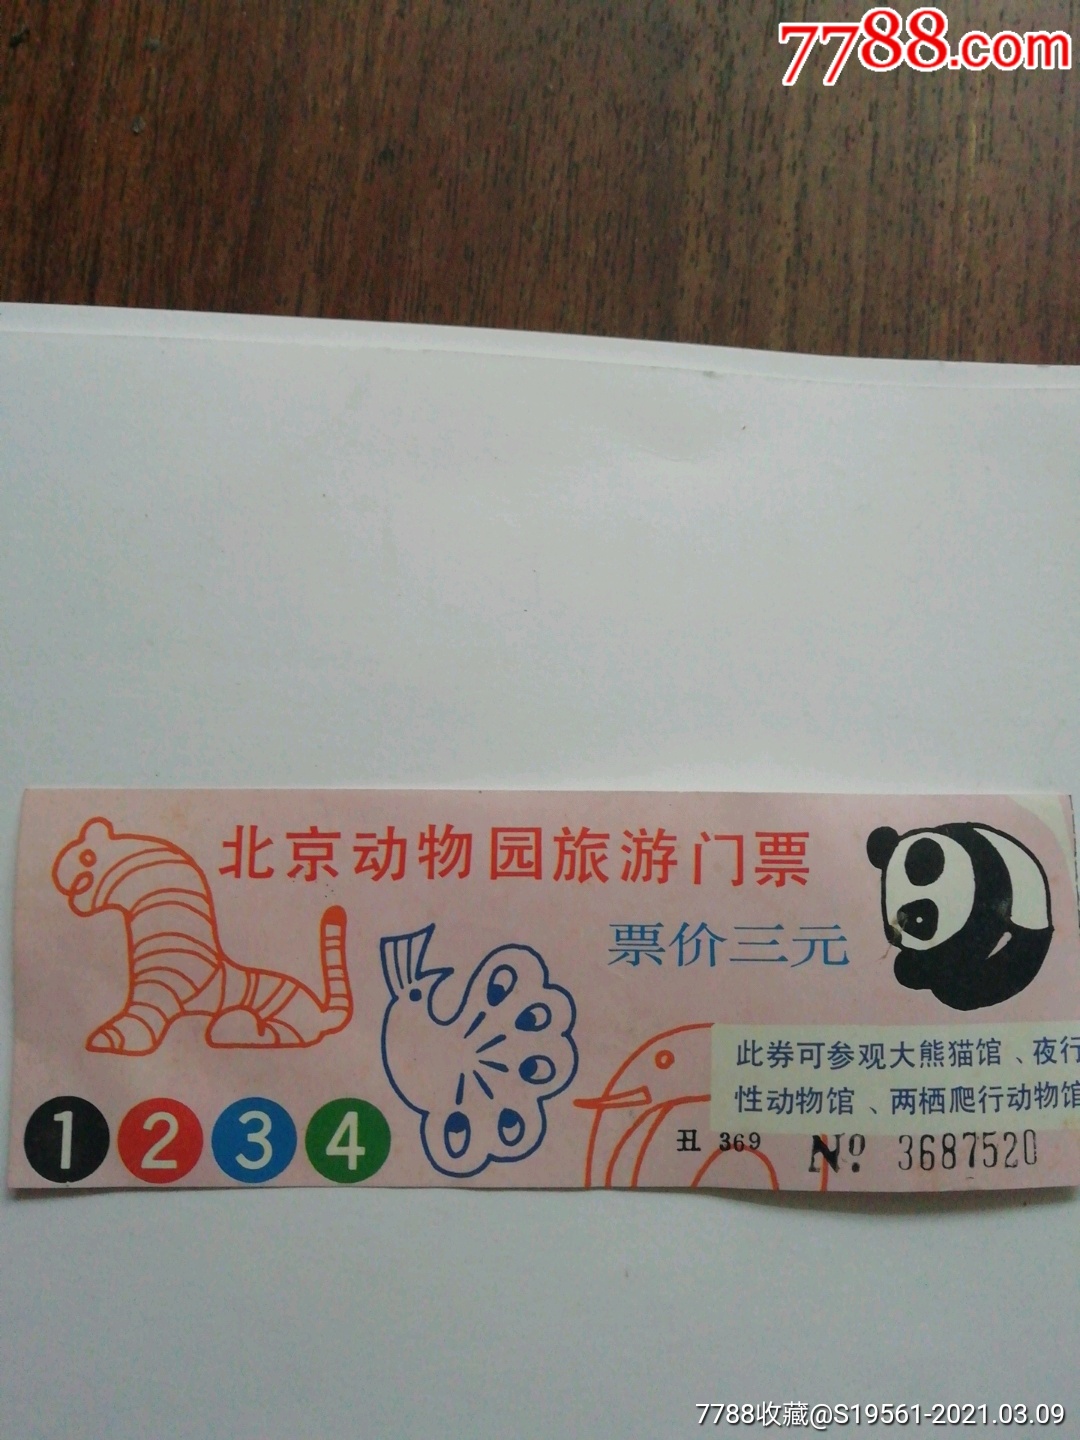 北京动物园-价格:1.0000元-au25730401-旅游景点门票